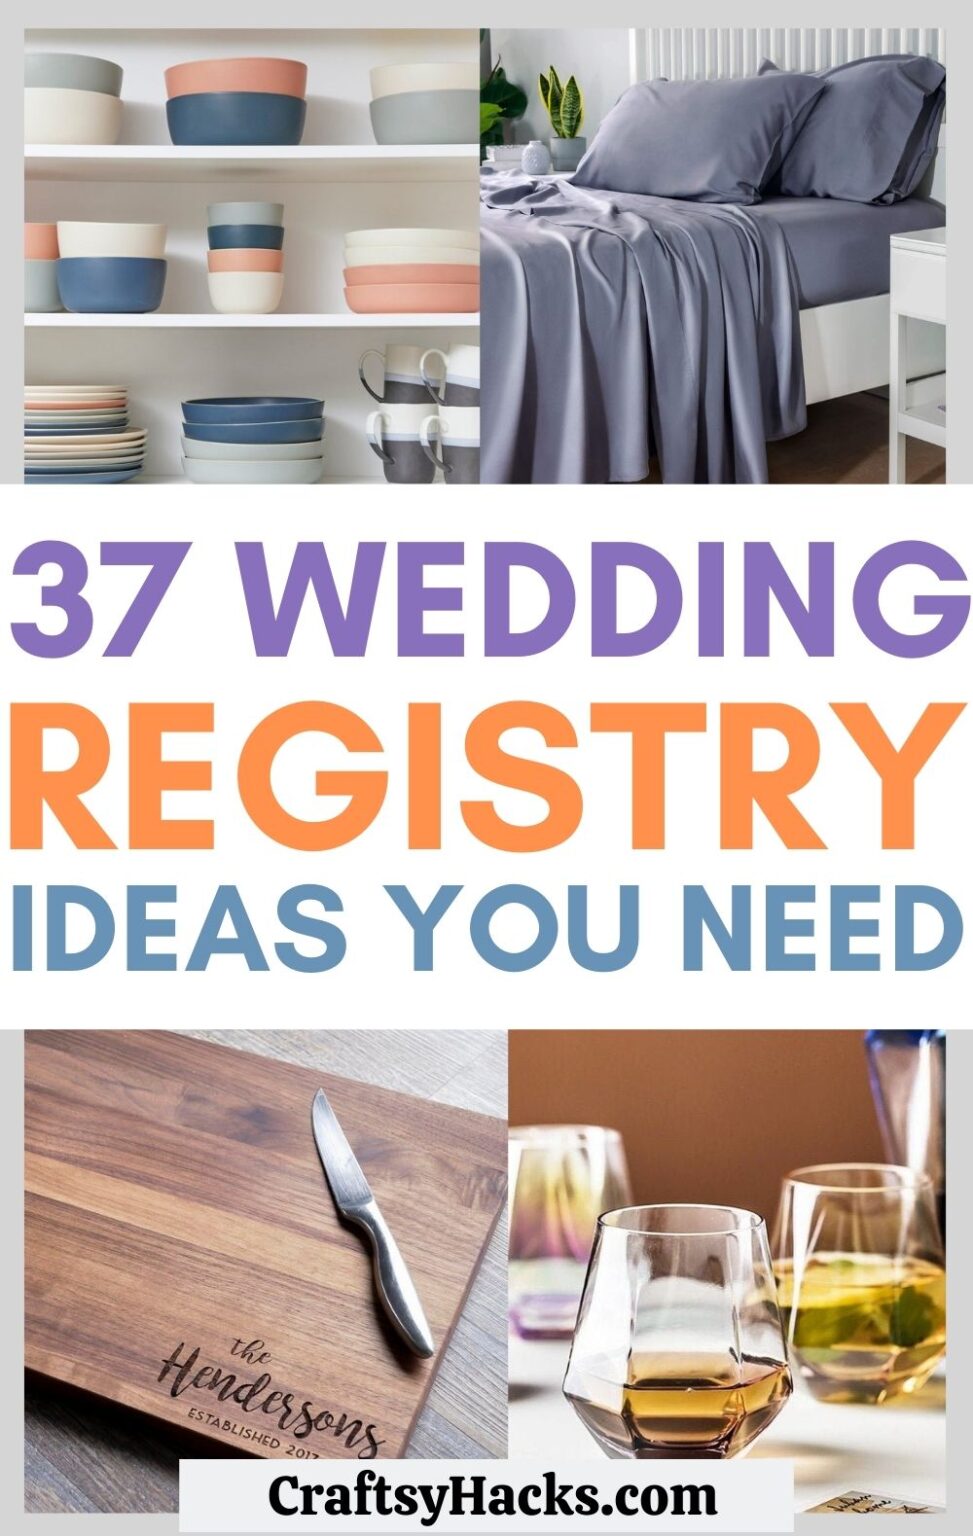 37 Wedding Registry Ideas You Need Craftsy Hacks